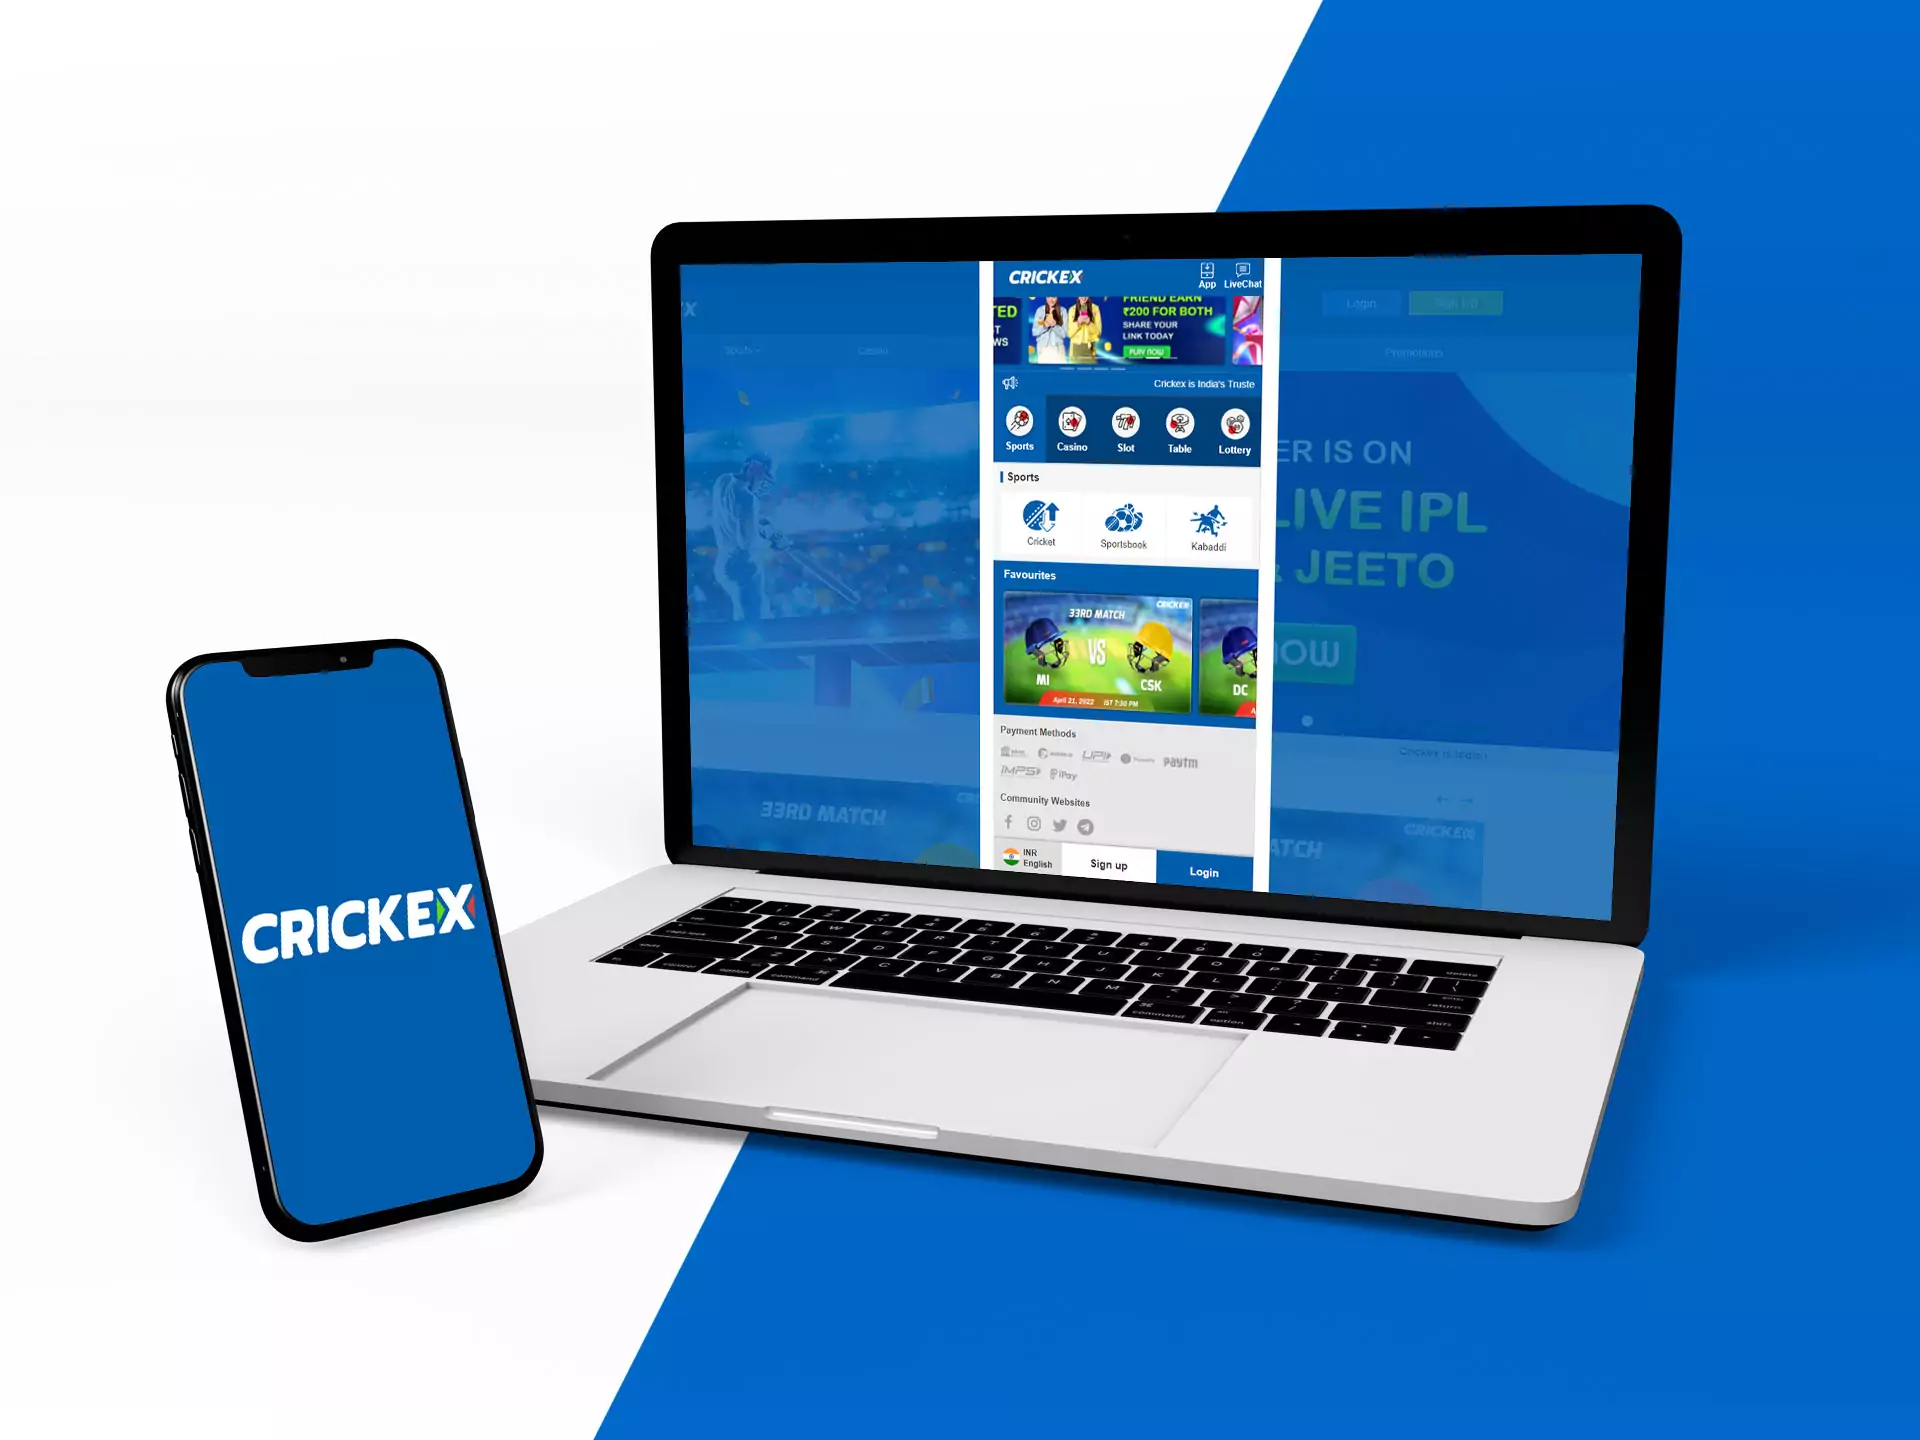 Crickex वेबसाइट का मोबाइल संस्करण ऐप का एक अच्छा विकल्प है।